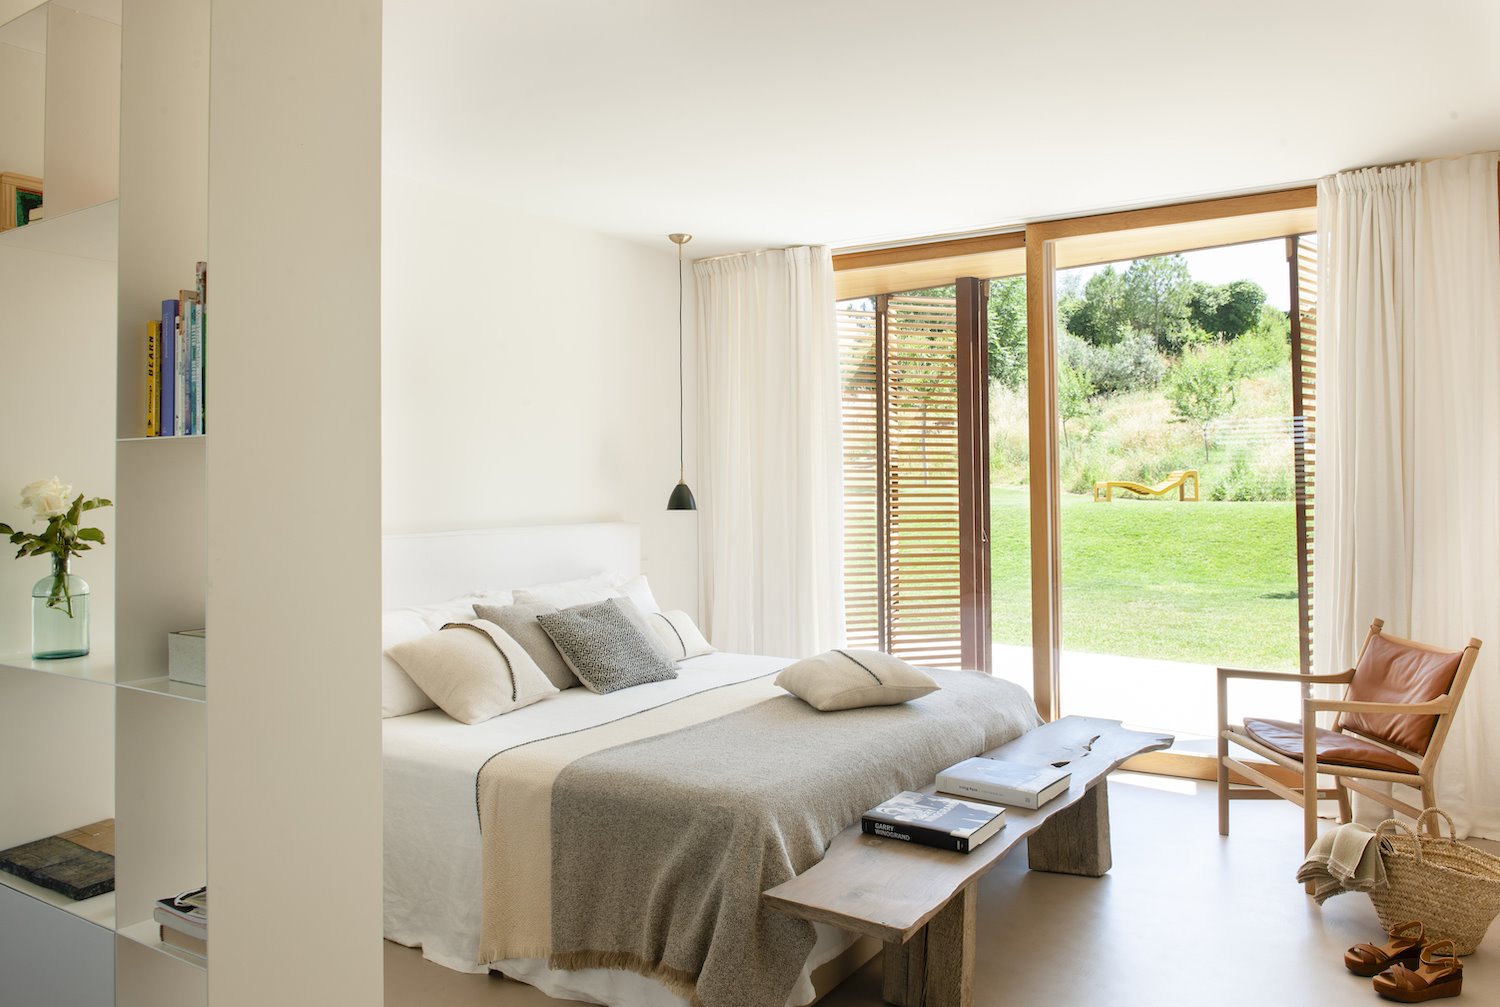 Dormitorio con ropa de cama natural y ventana abierta al jardin. La cama bien hecha